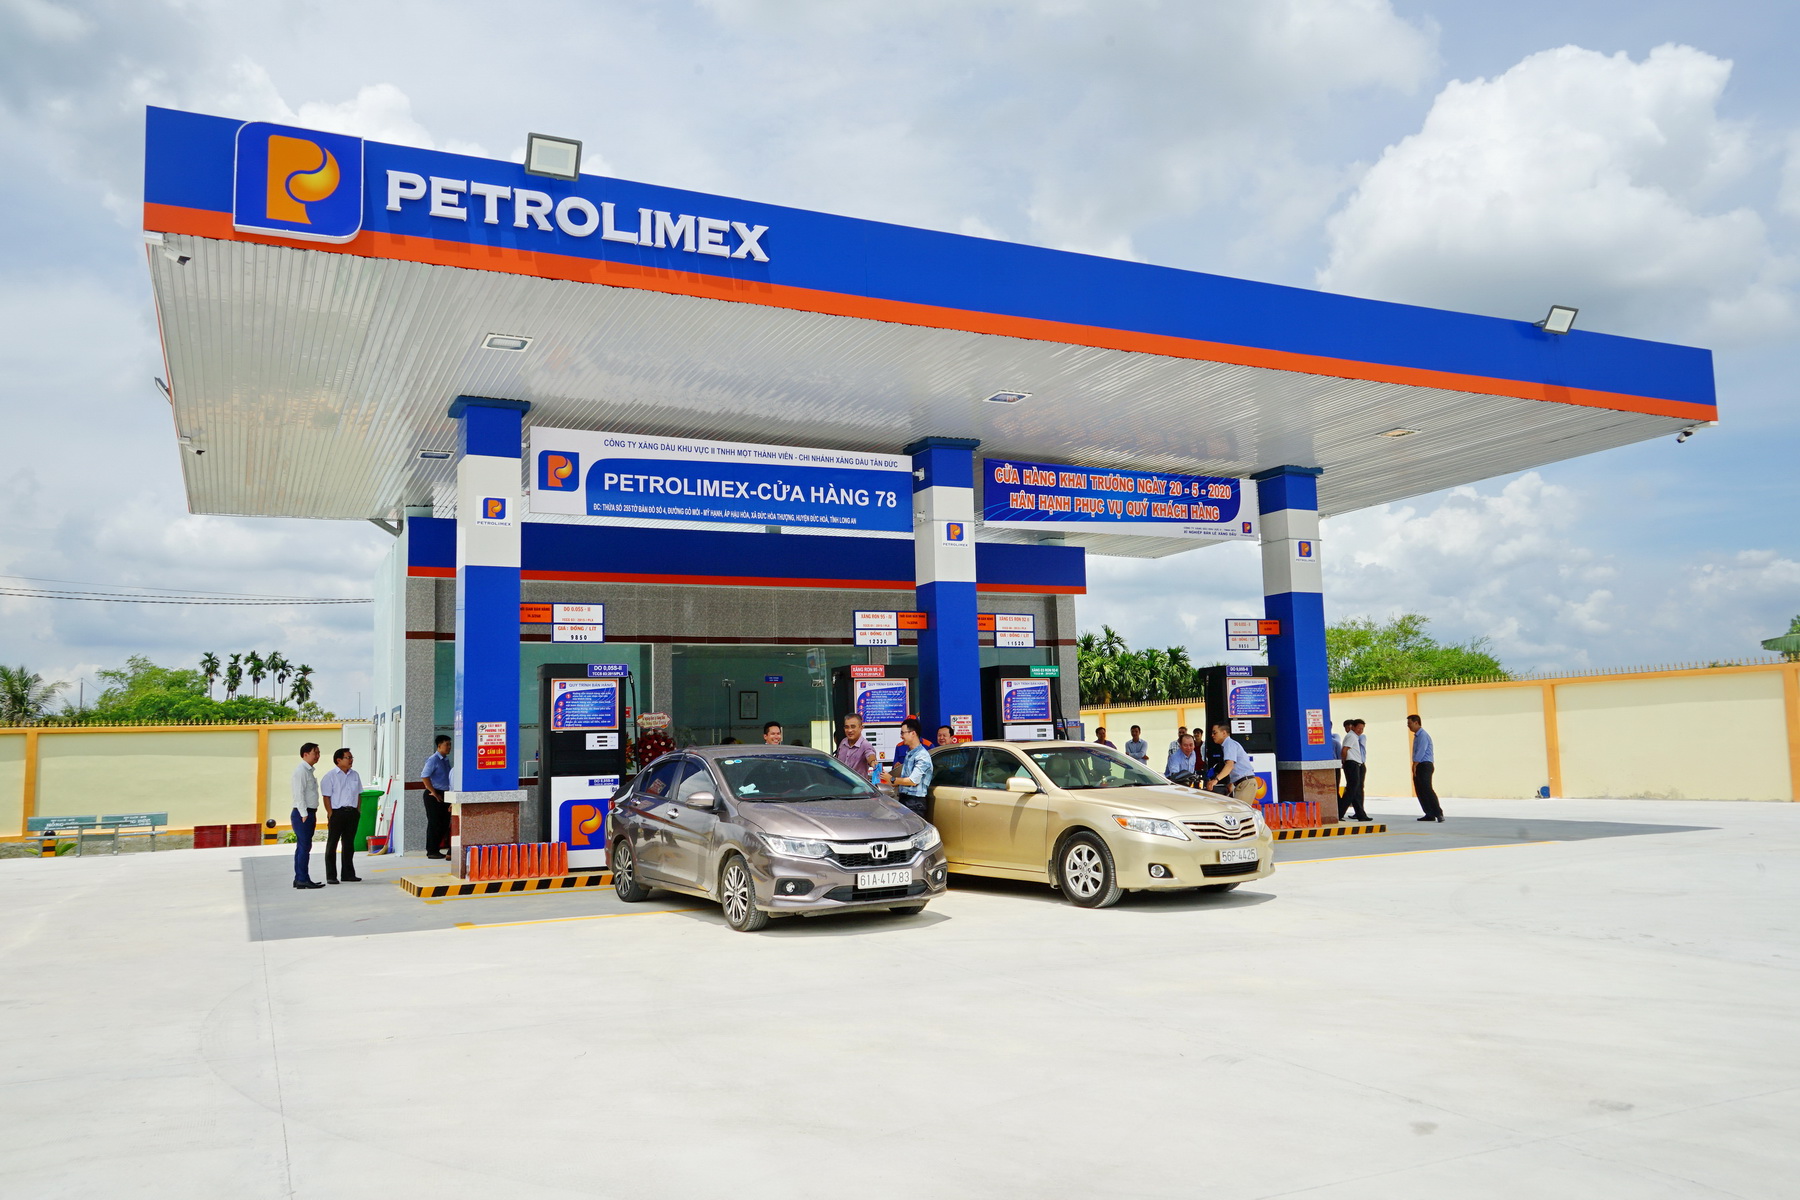 Petrolimex, PVOil, Lọc dầu Bình Sơn... bị khui hàng loạt vi phạm về kinh doanh xăng dầu- Ảnh 1.